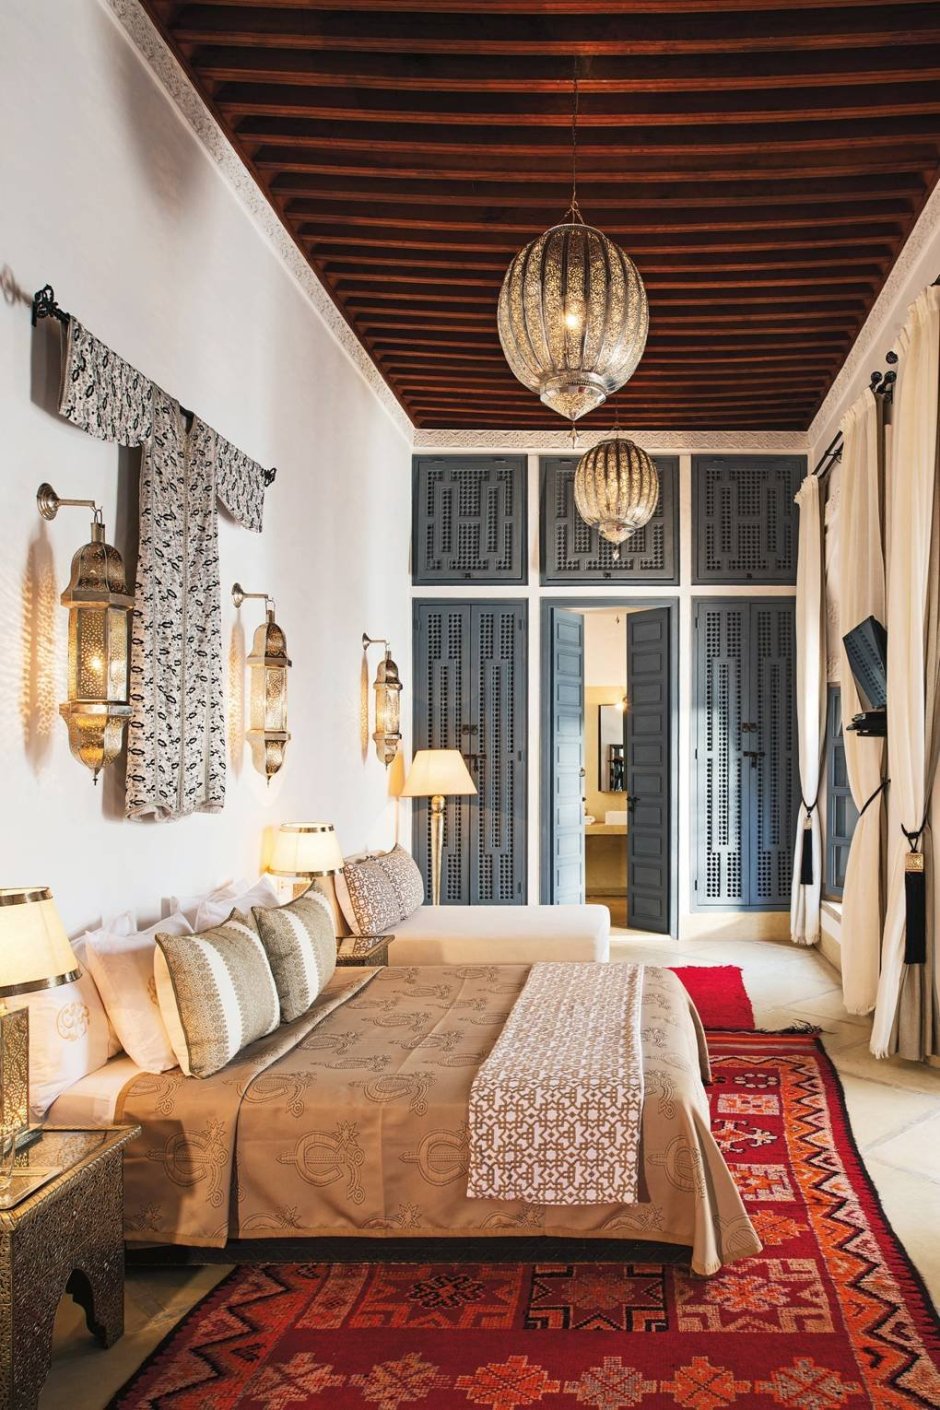 Moroccan interior design